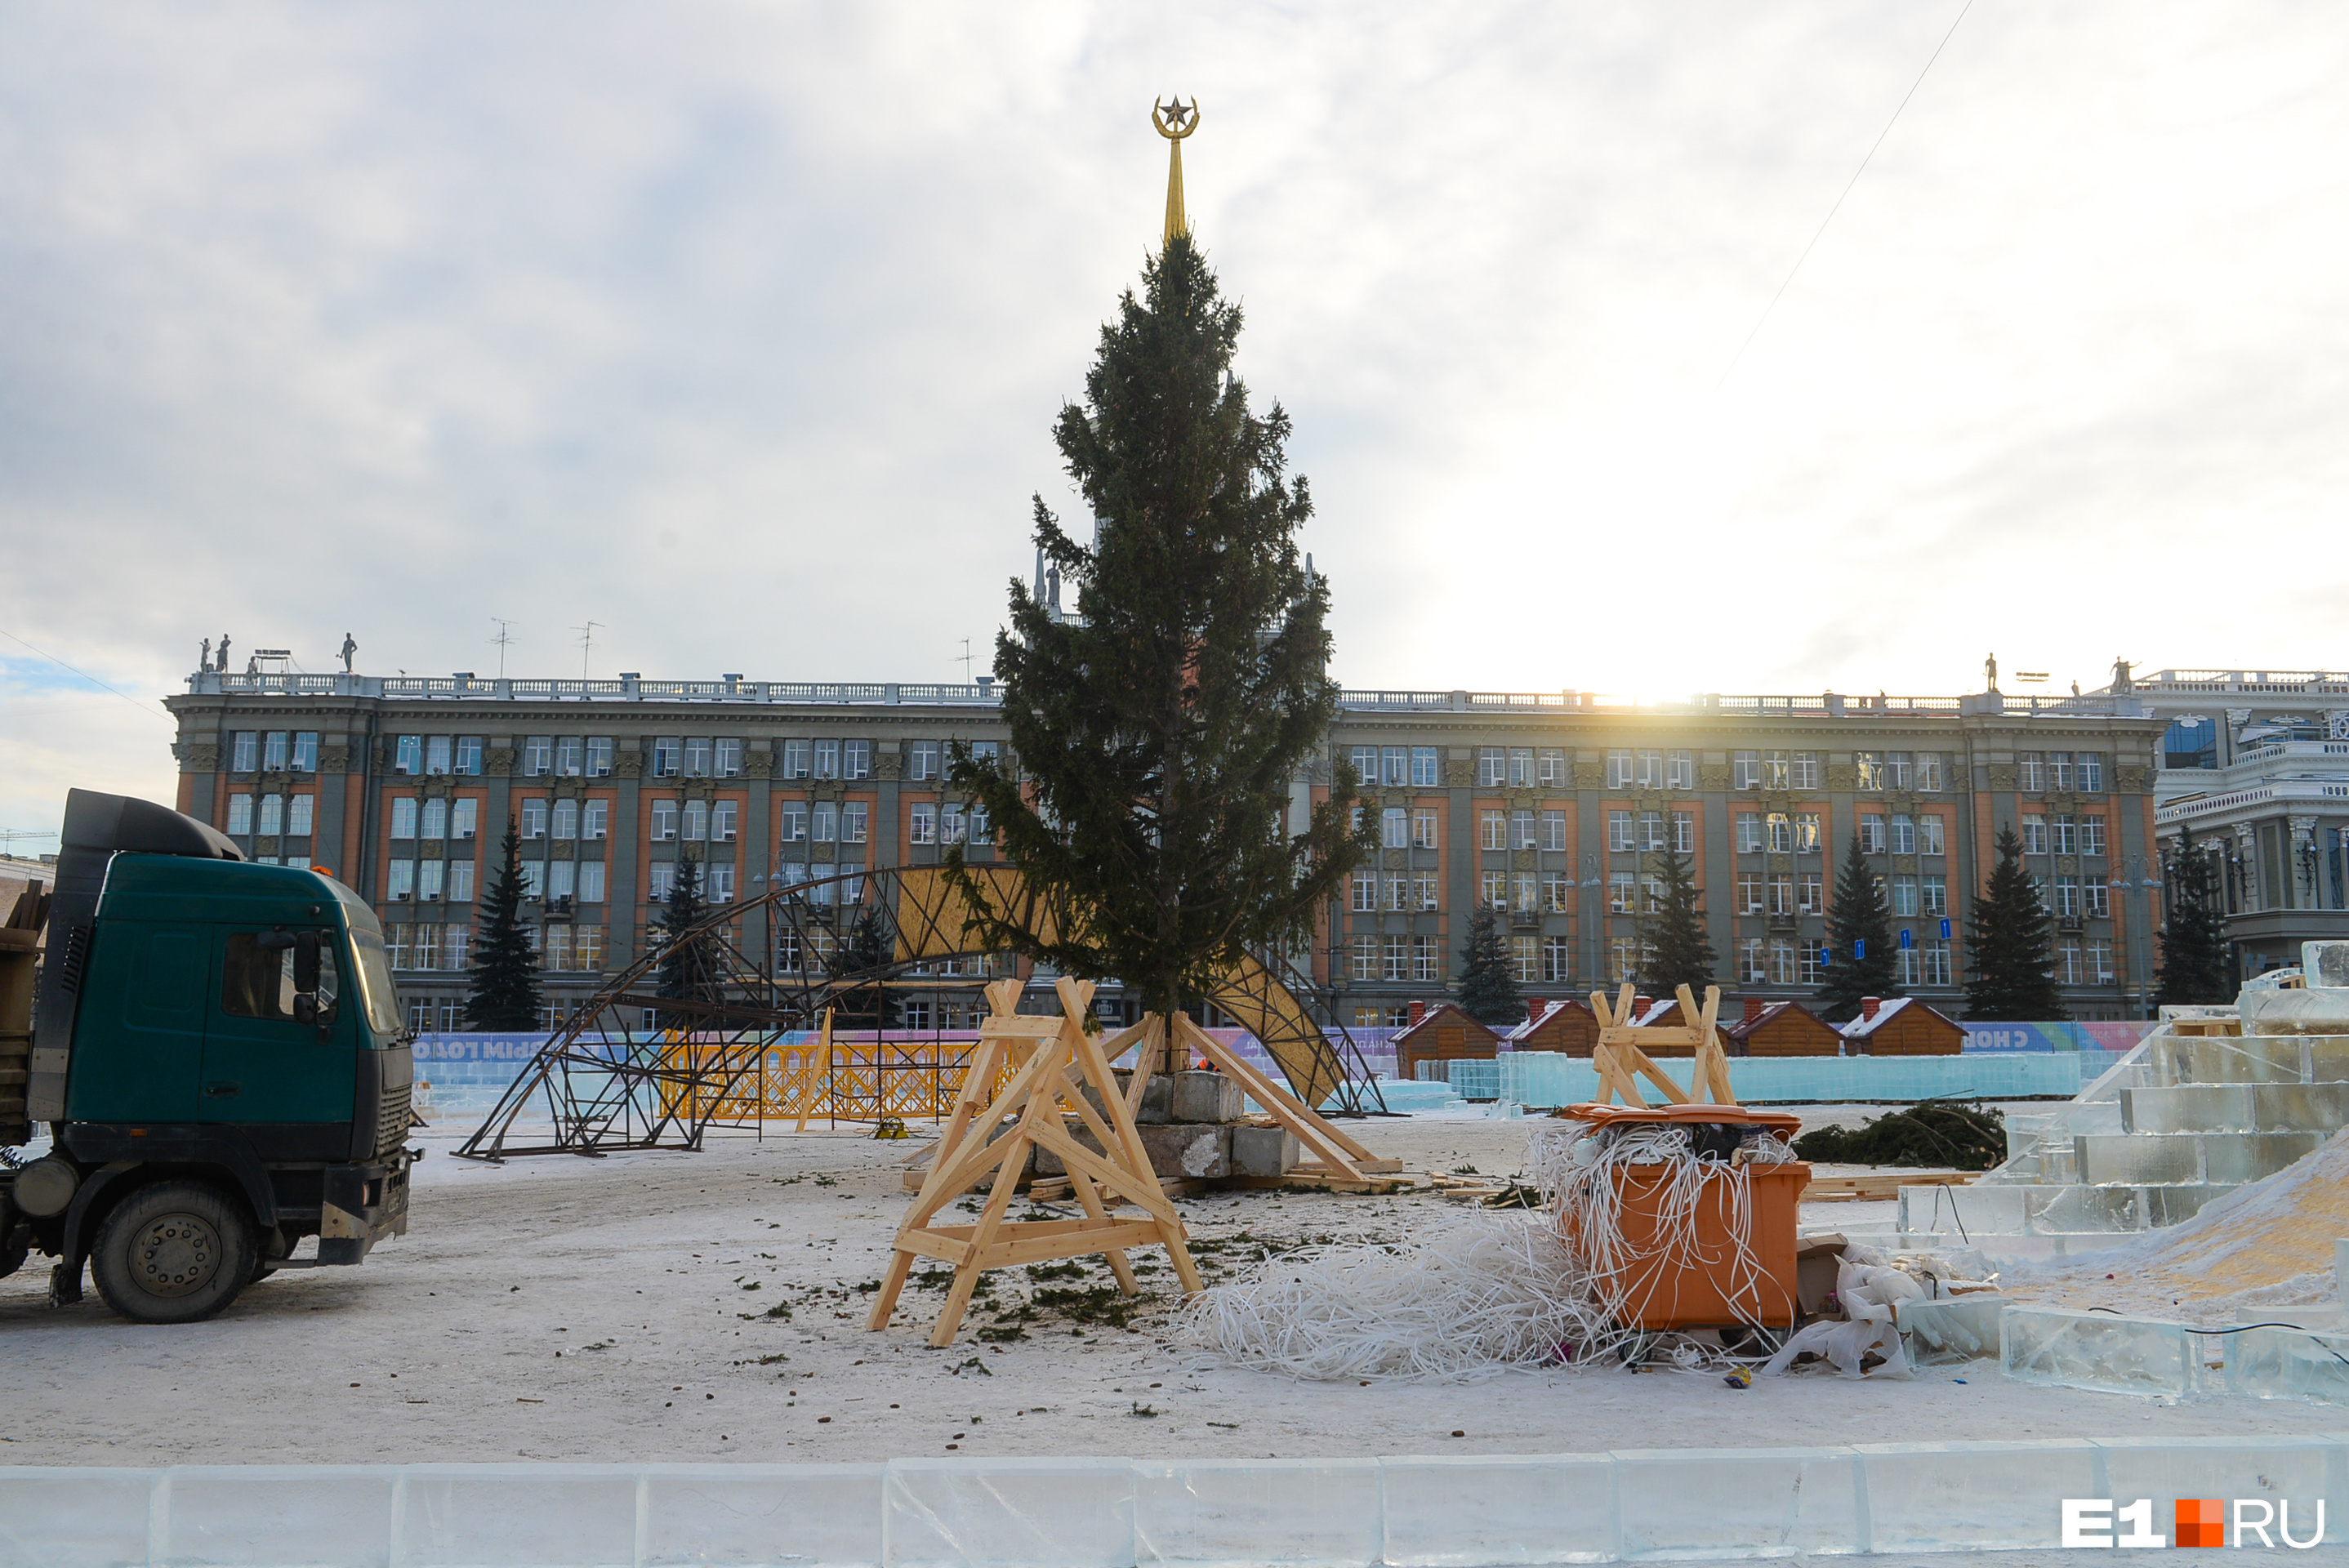 Вместо конуса на главной площади Екатеринбурга решили поставить живую ель. Рассказываем, какой она будет высоты